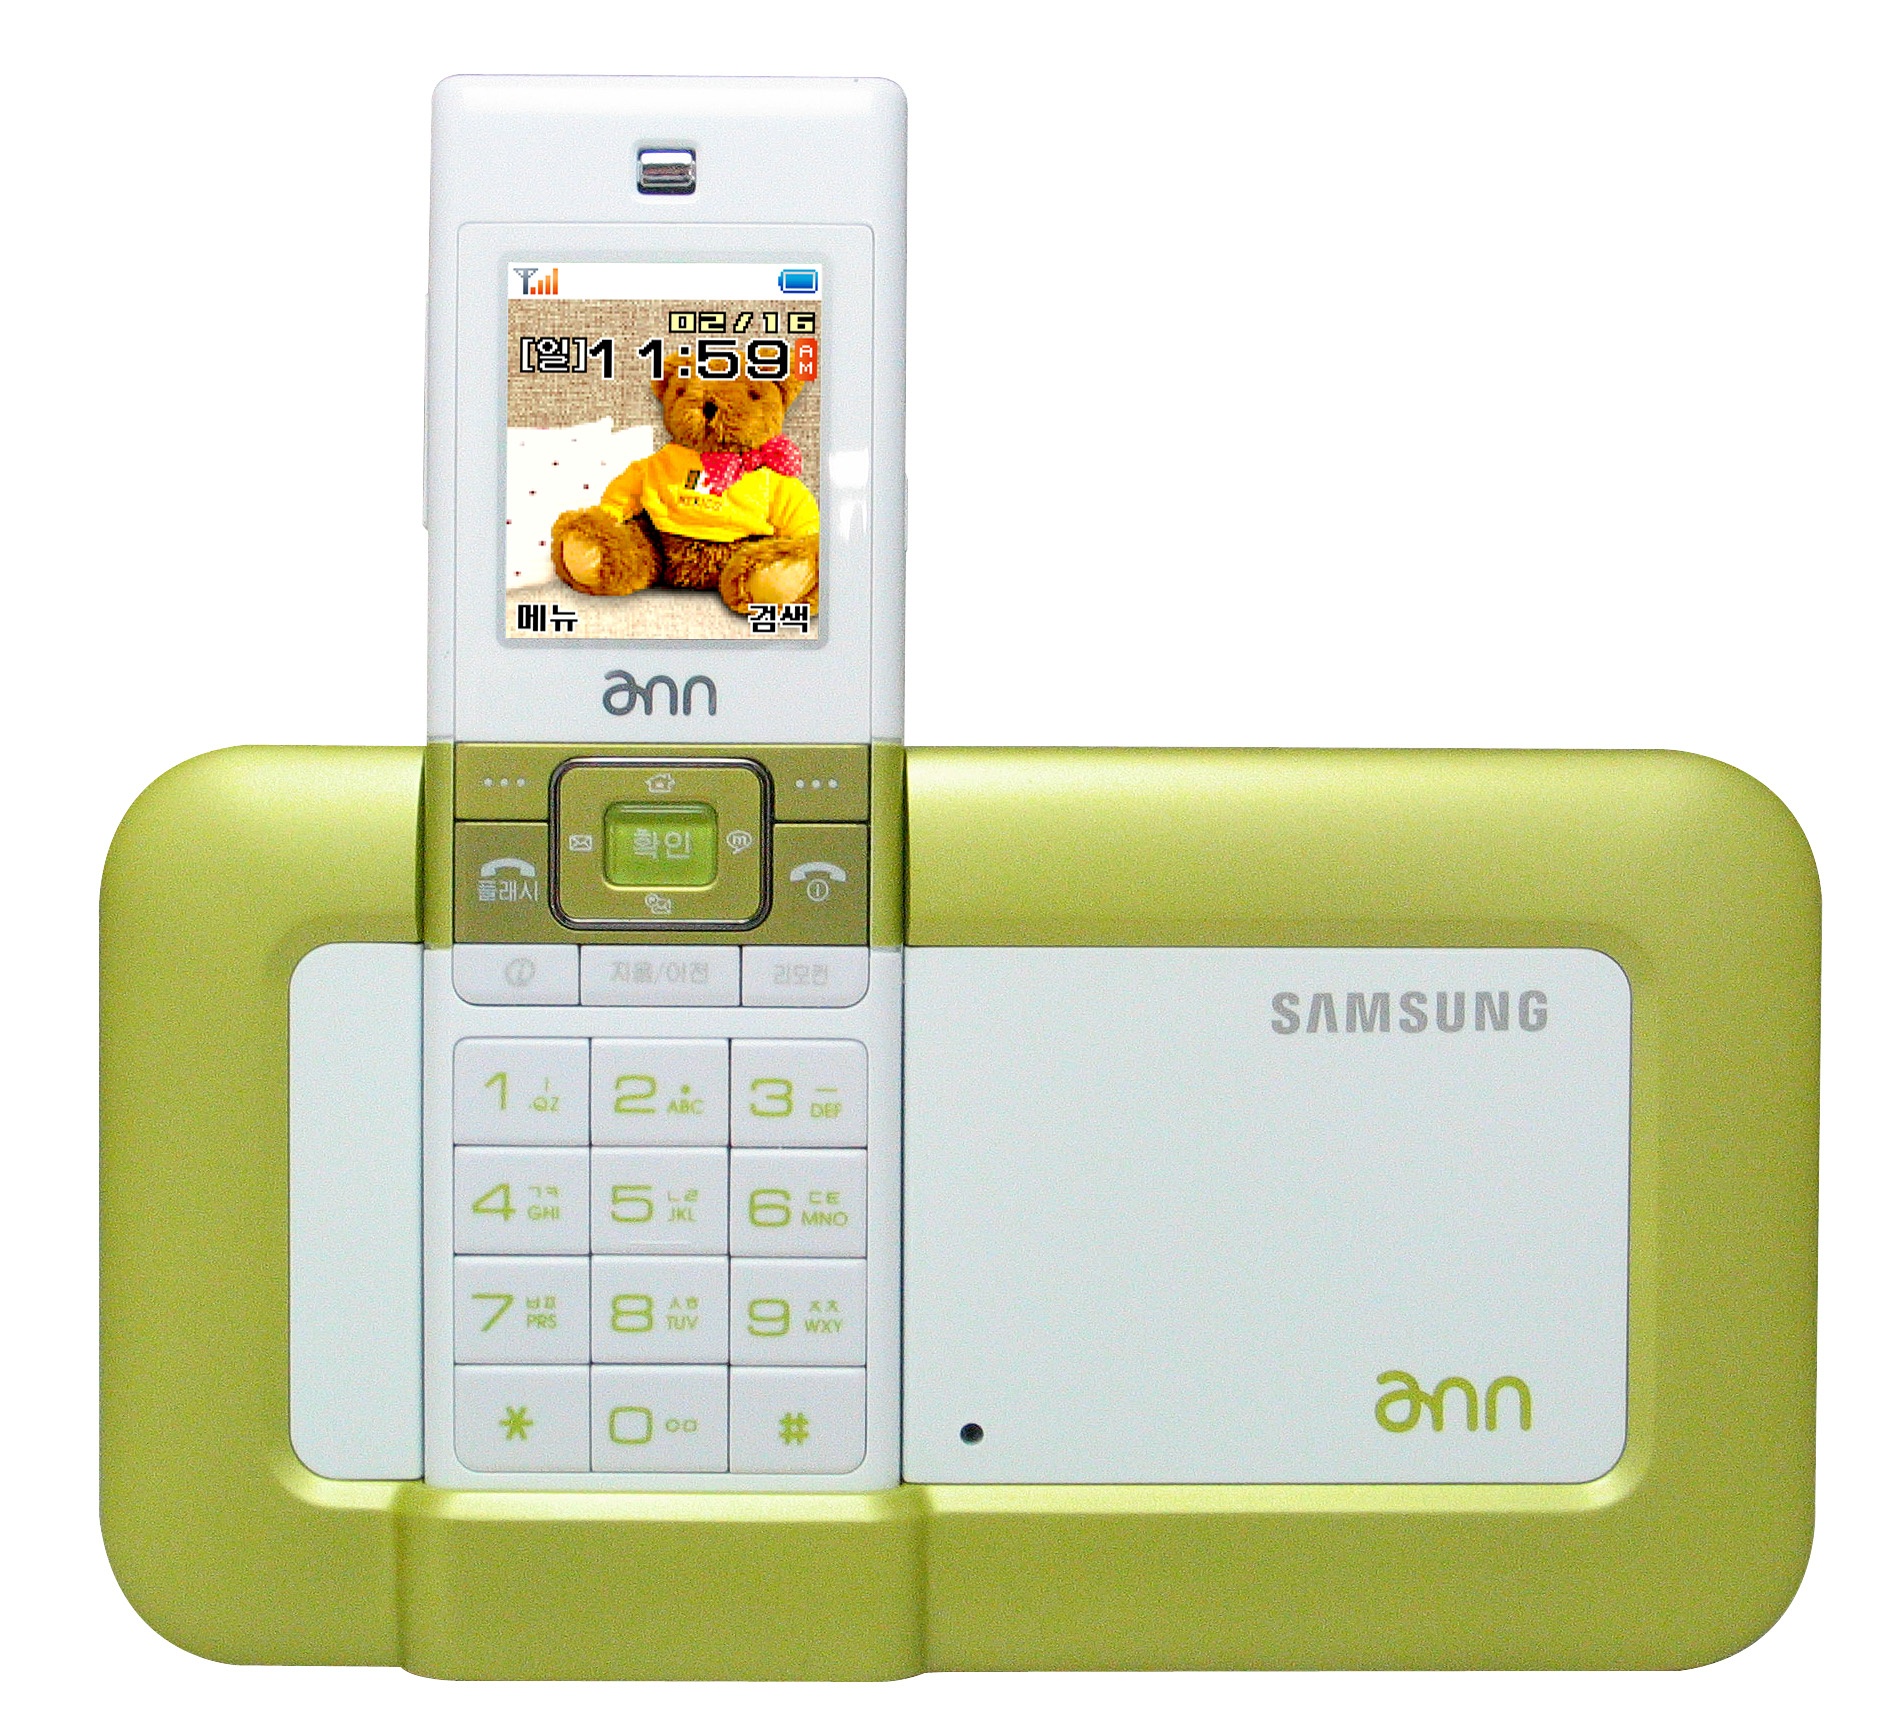 SMT-P7000, DECT phone